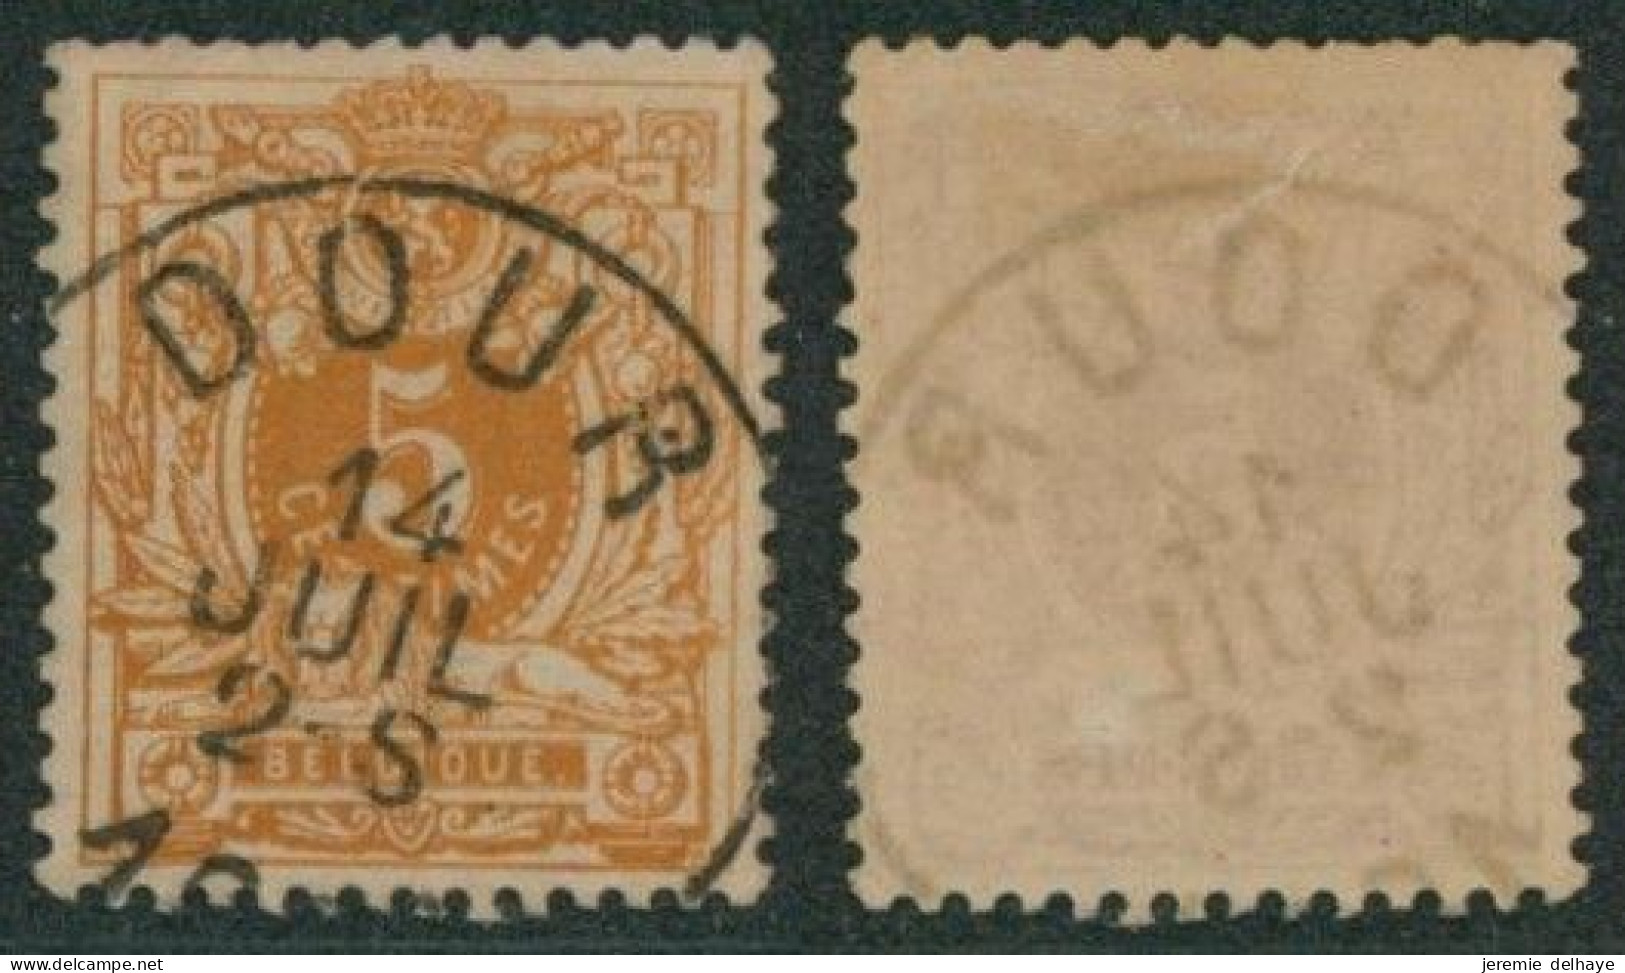 émission 1869 - N°28 Obl Simple Cercle "Dour" // (AD) - 1869-1888 Lying Lion